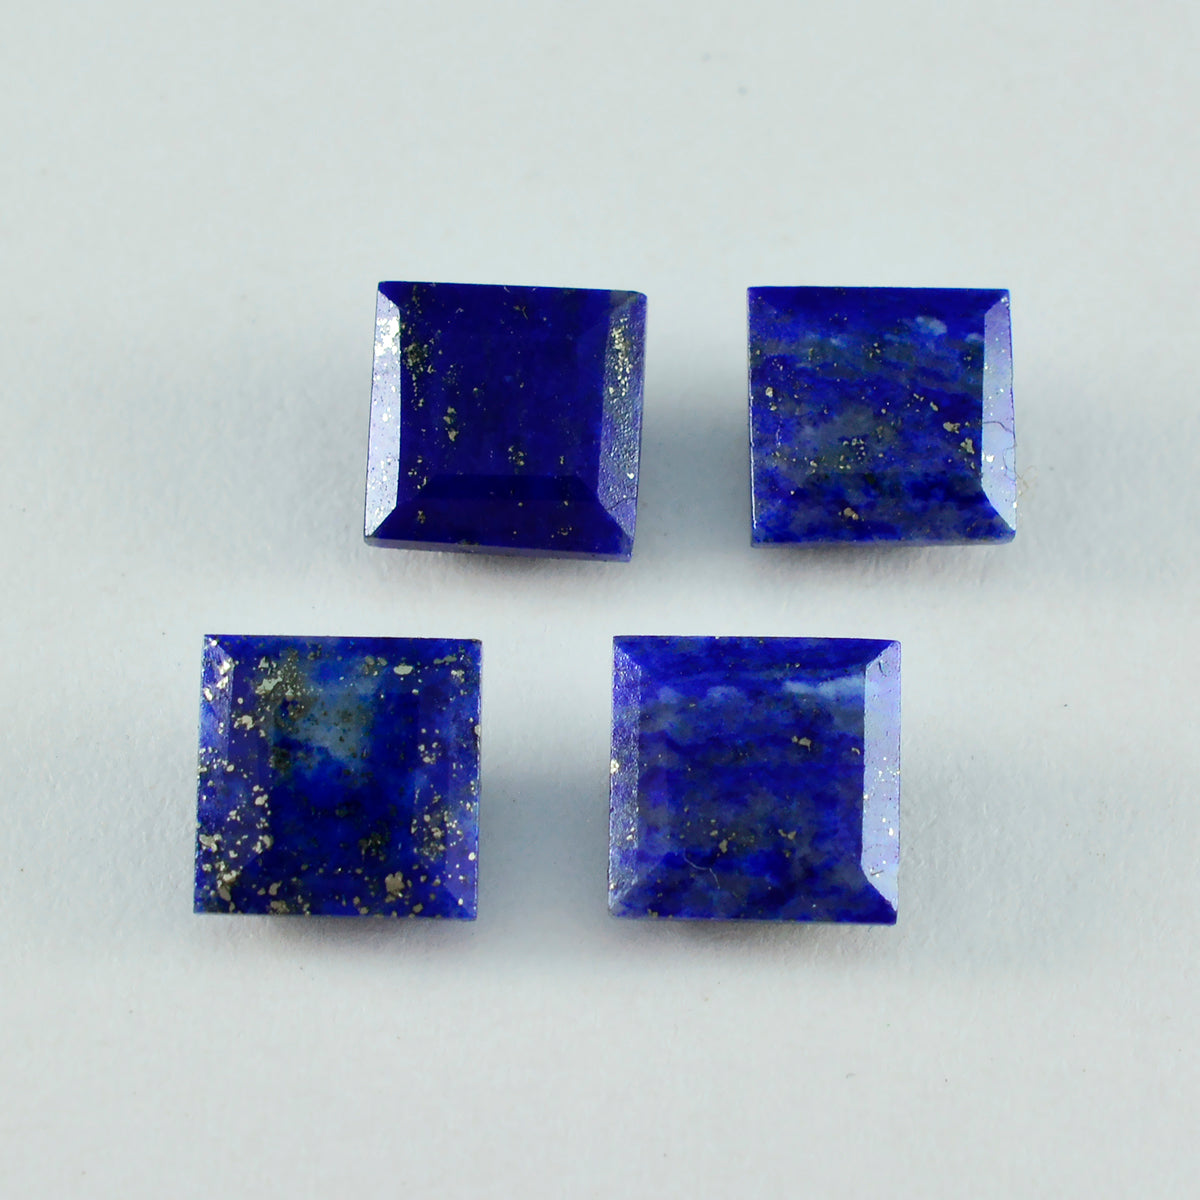 Riyogems 1PC Real Blue Lapis Lazuli Faceted 9x9 mm Square Shape astonishing Quality Gemstone